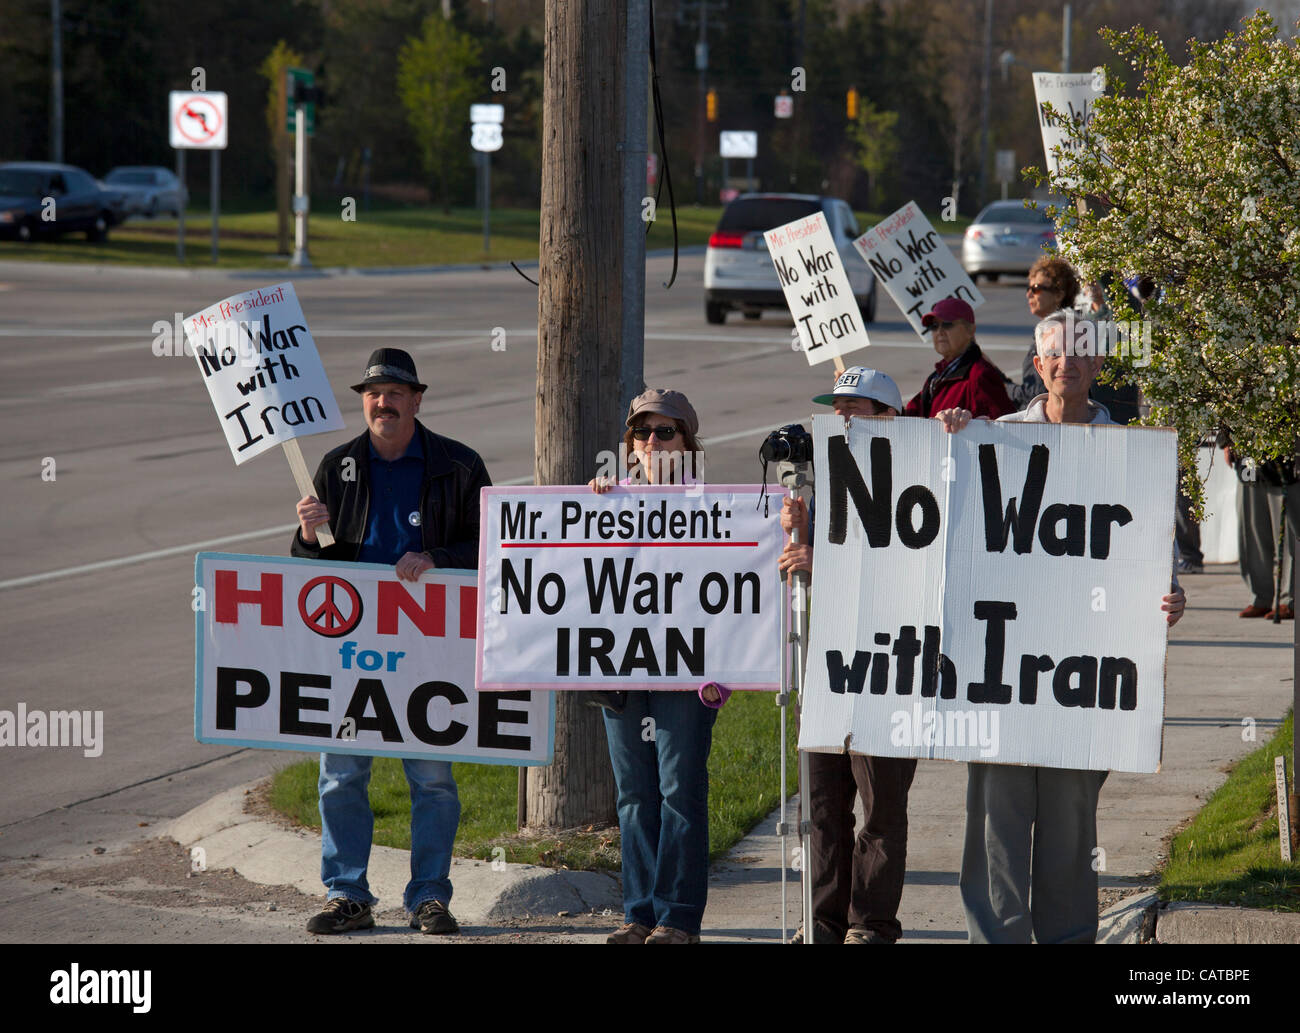 Bingham Farms, Michigan - Aktivisten halten Frieden unterzeichnet gegnerischen Krieg gegen den Iran während des Wartens auf Präsident Obama Motorcade übergeben. Der Präsident besuchte eine Kampagne Spendenaktion in der Nähe. Stockfoto